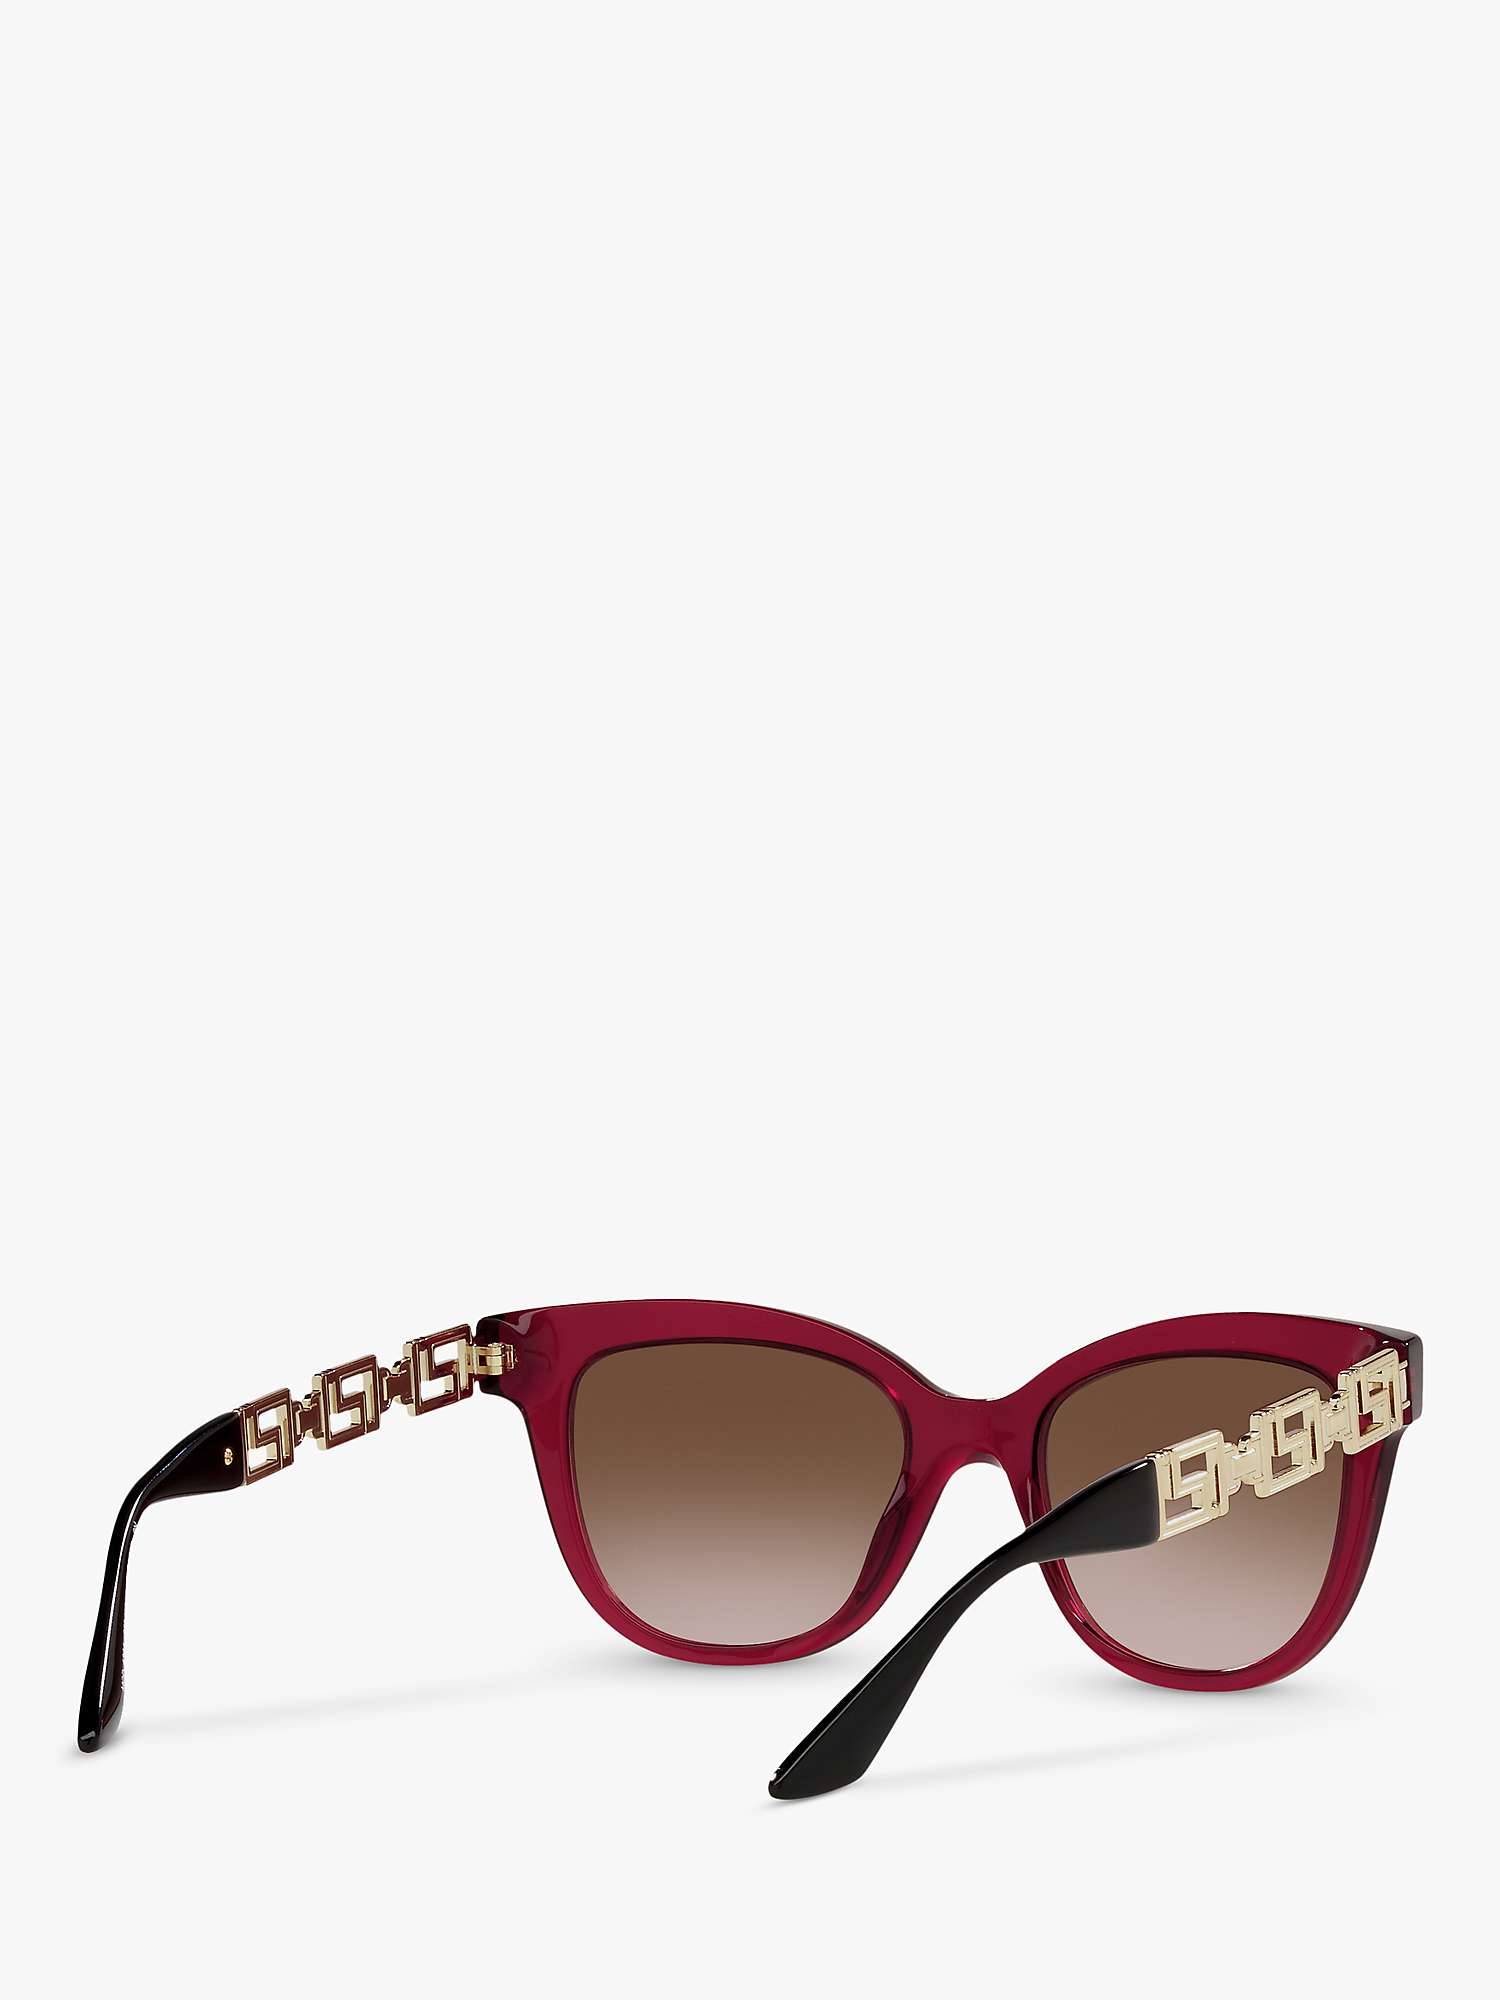 Buy Versace VE4394 Women's Cat's Eye Sunglasses, Transparent Bordeaux/Brown Gradient Online at johnlewis.com